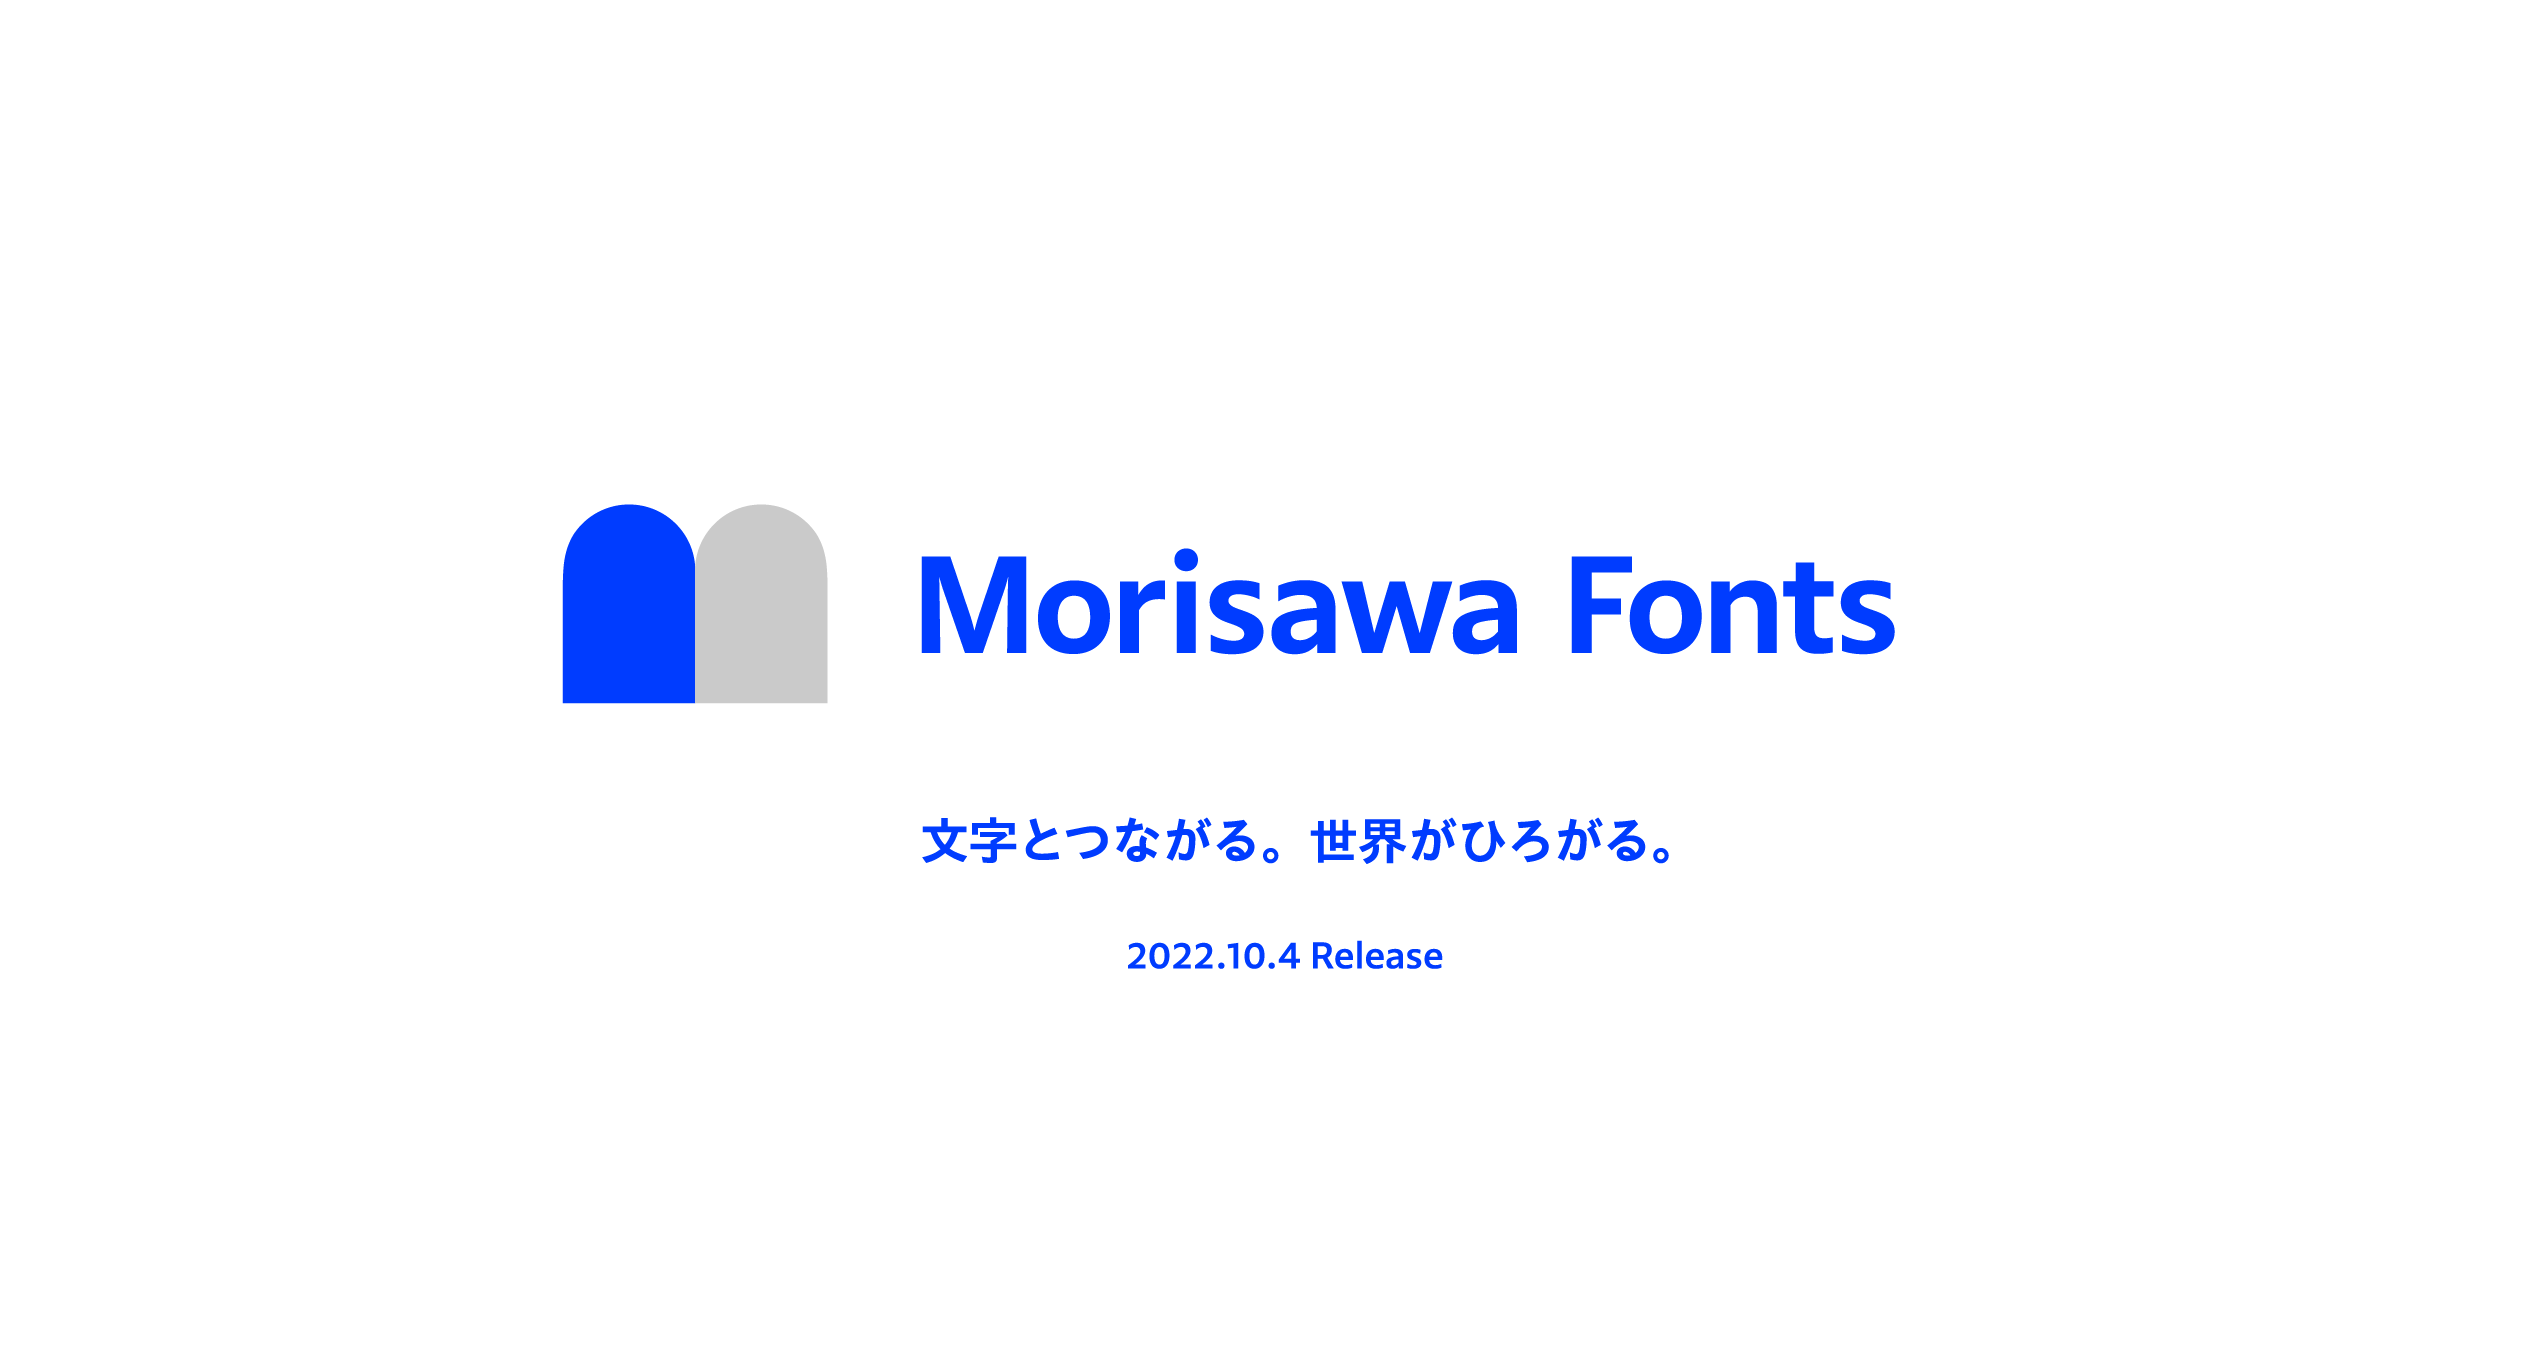 モリサワメーカー型番モリサワ MORISAWA PASSPORT ONE